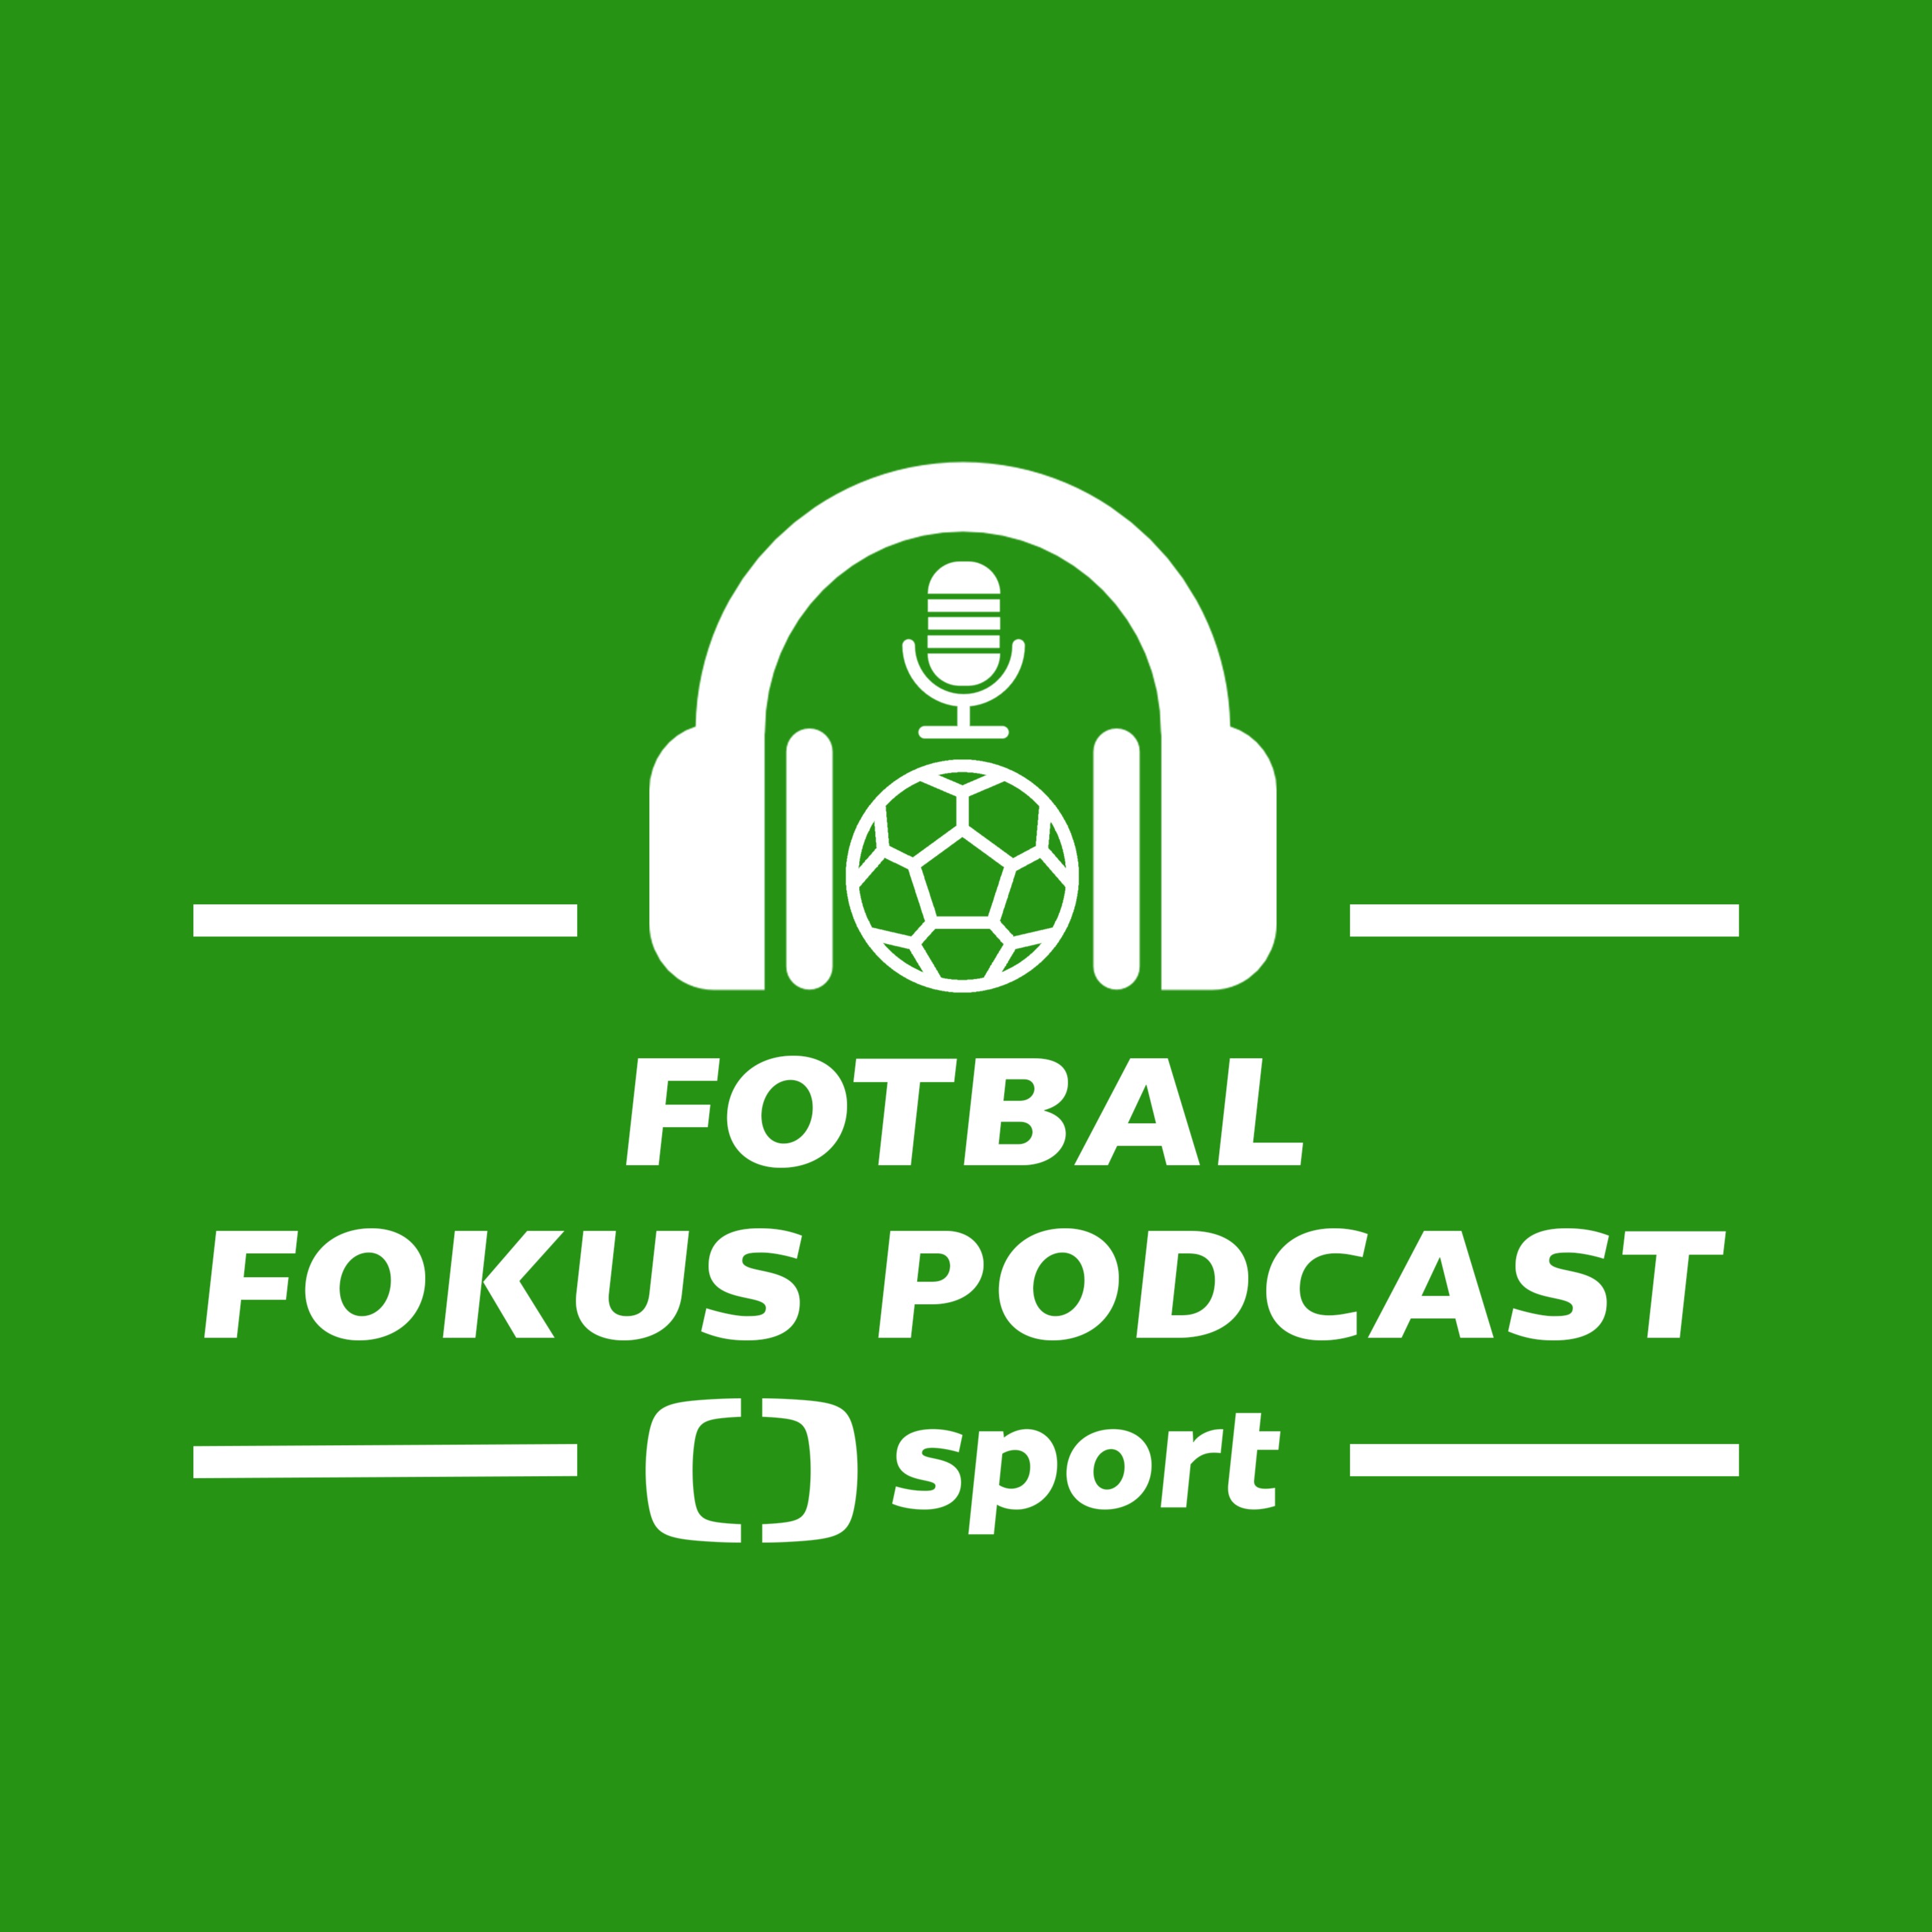 Fotbal fokus podcast: Jarolím za zenitem? Kozel spasitel a české týmy v pohárech